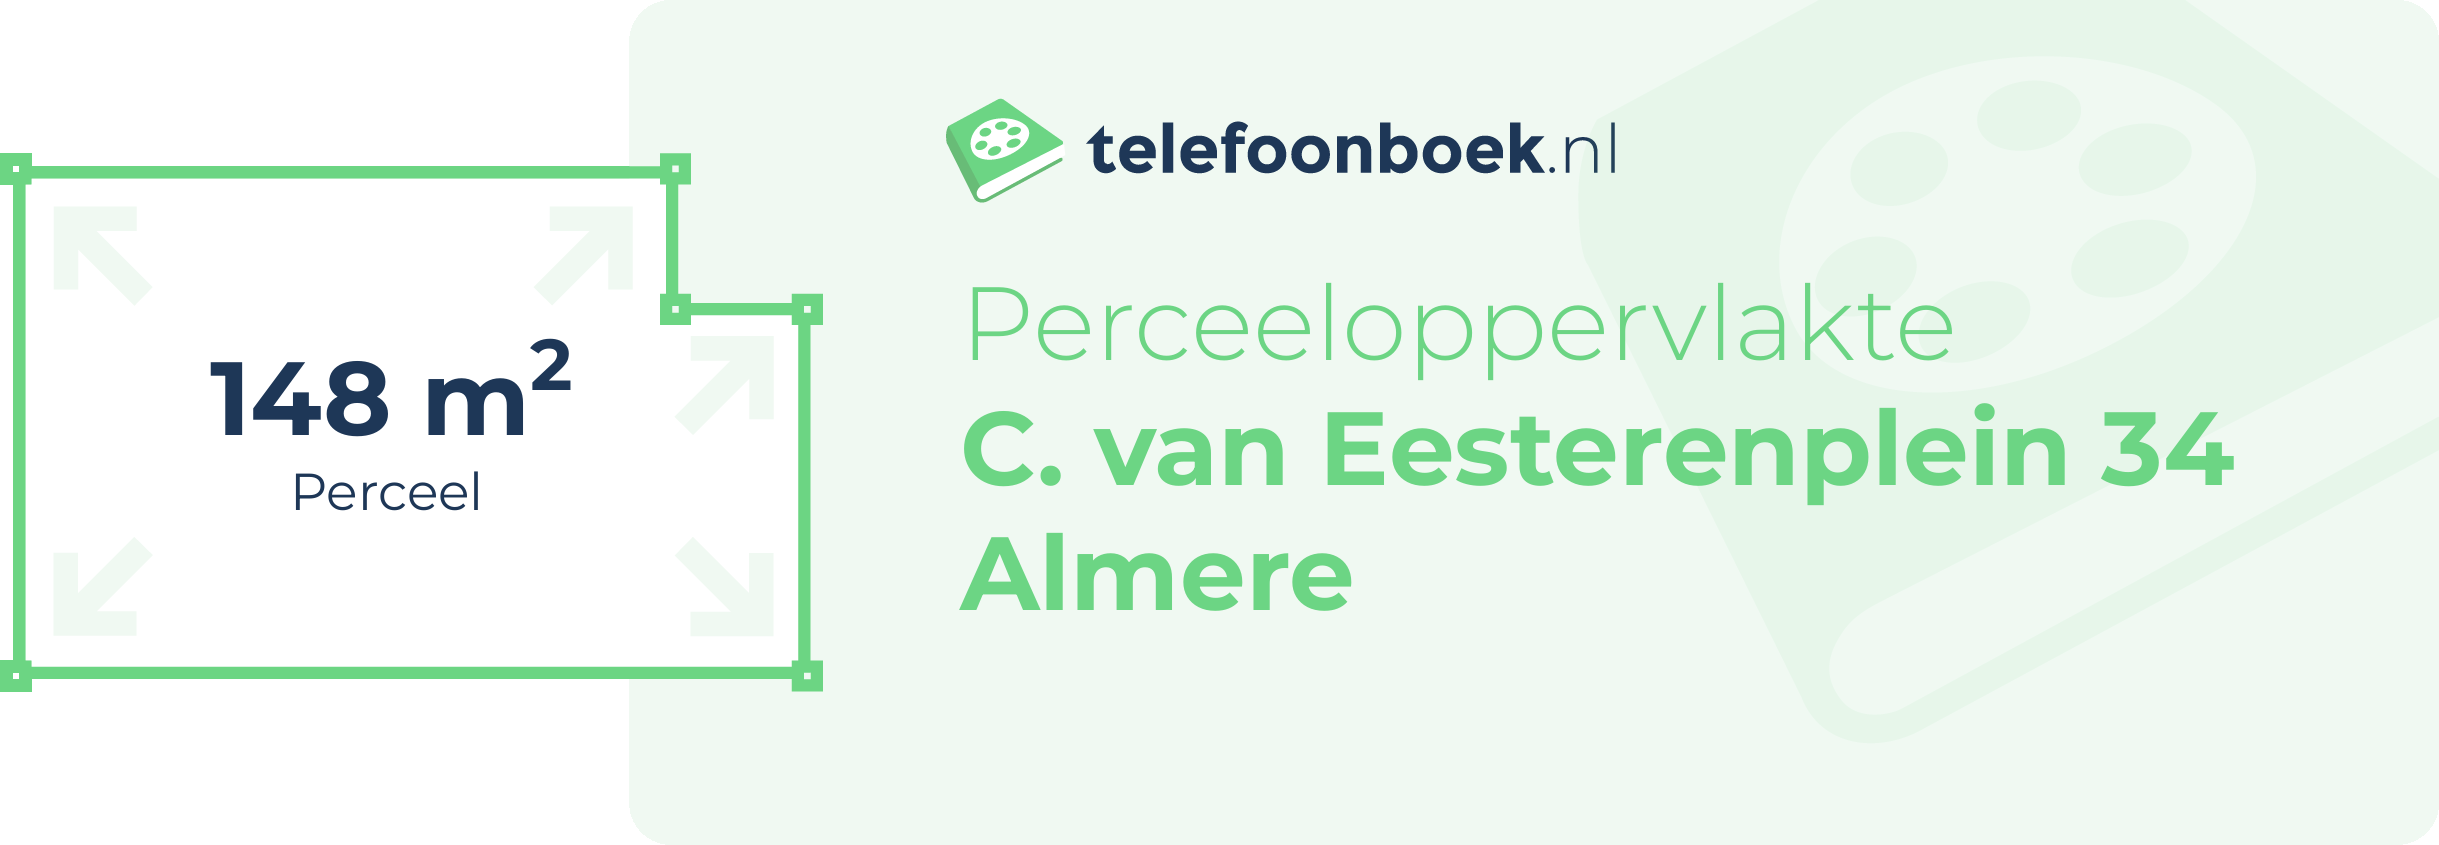 Perceeloppervlakte C. Van Eesterenplein 34 Almere